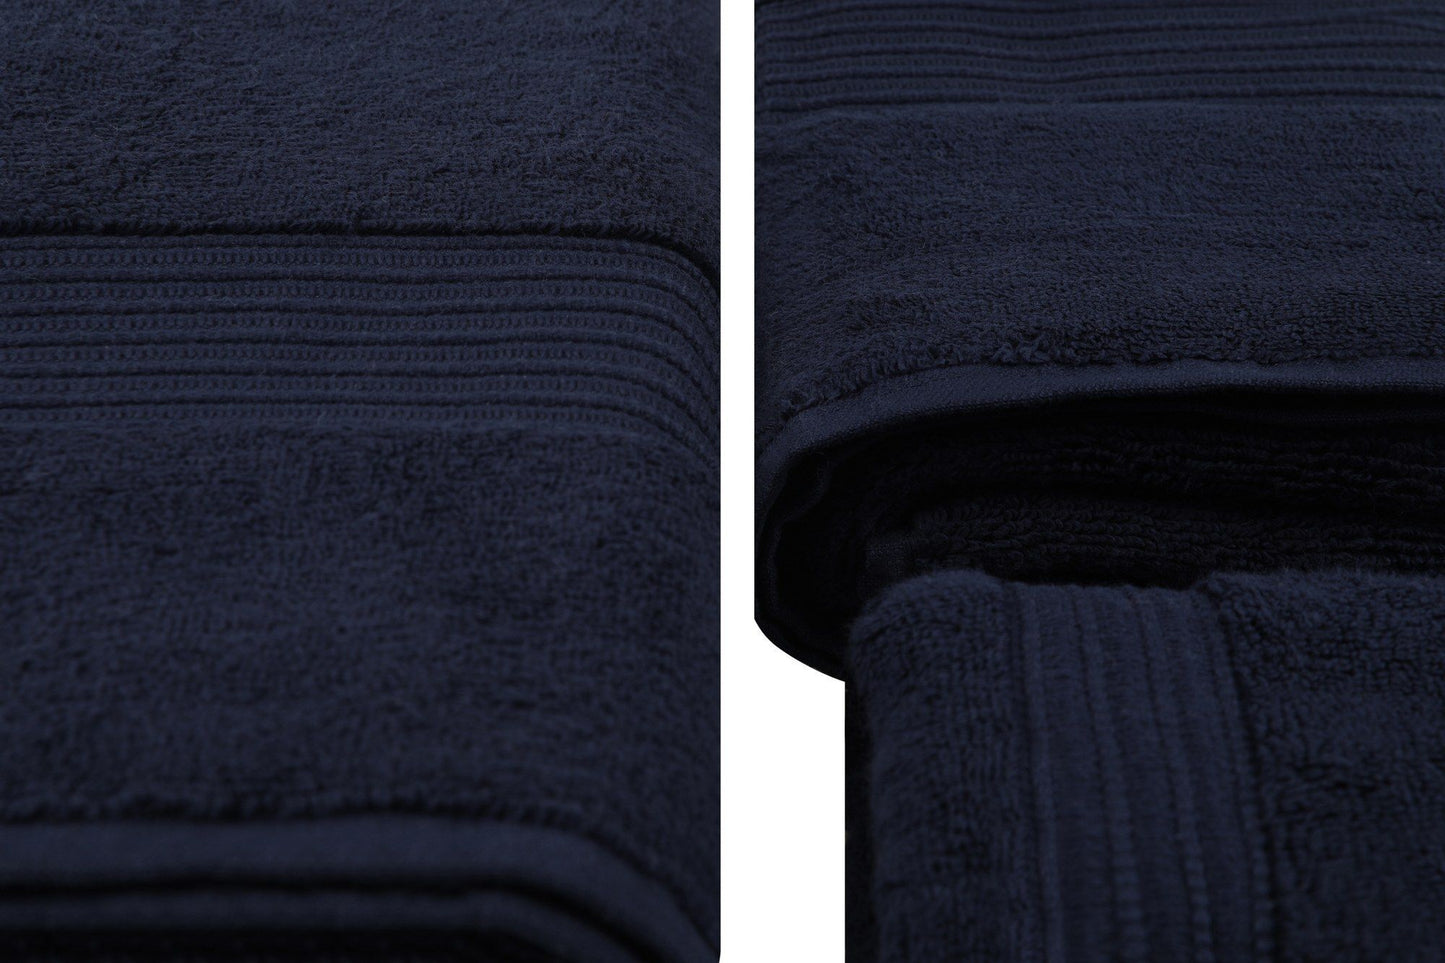 Håndklædesæt - Chicago - mørkeblå